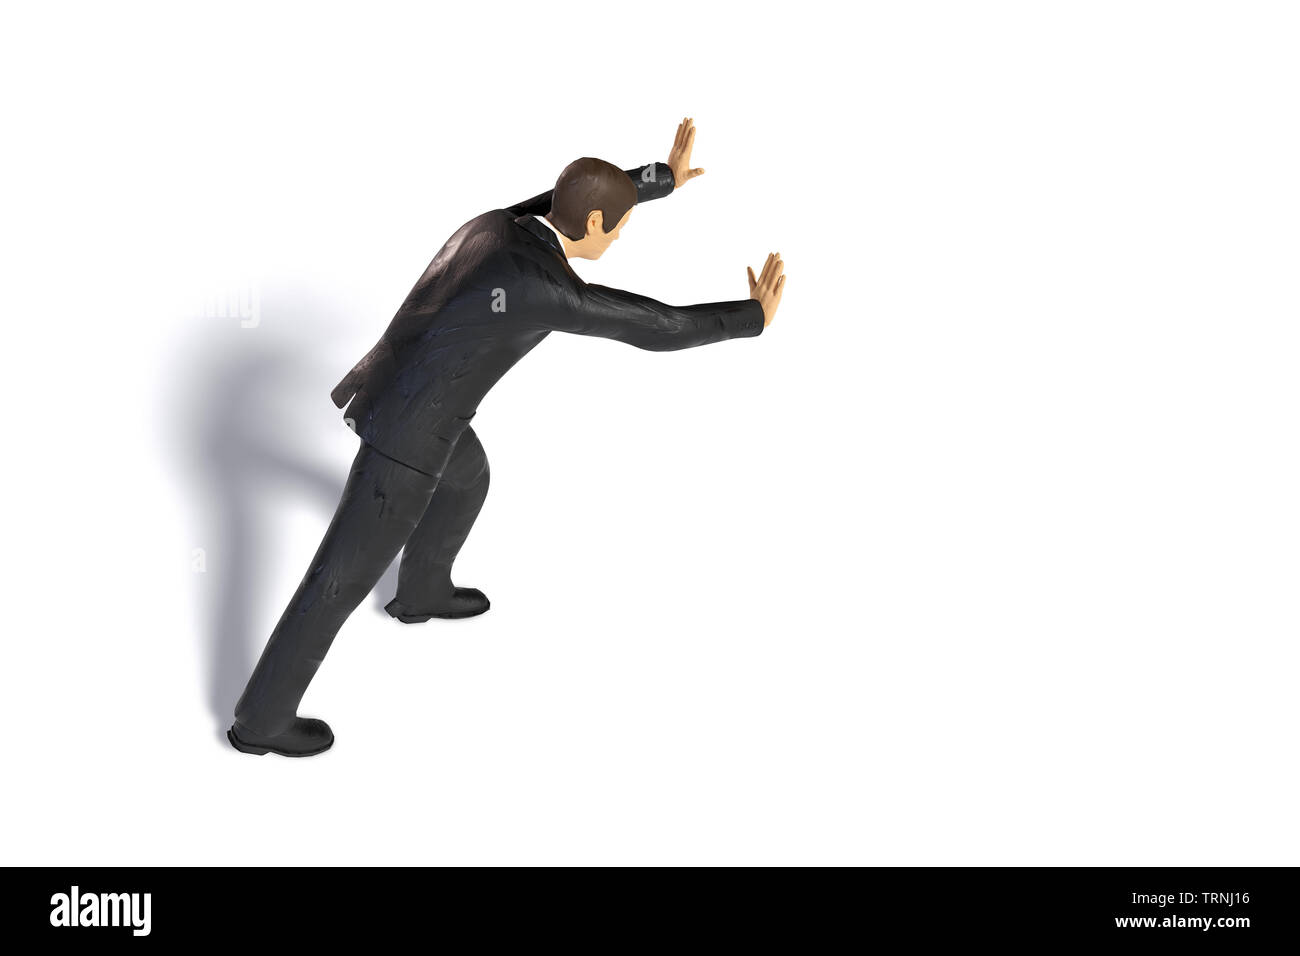 Spielzeug miniatur Geschäftsmann drücken, figurine Konzept mit Schatten auf weißem Hintergrund Stockfoto